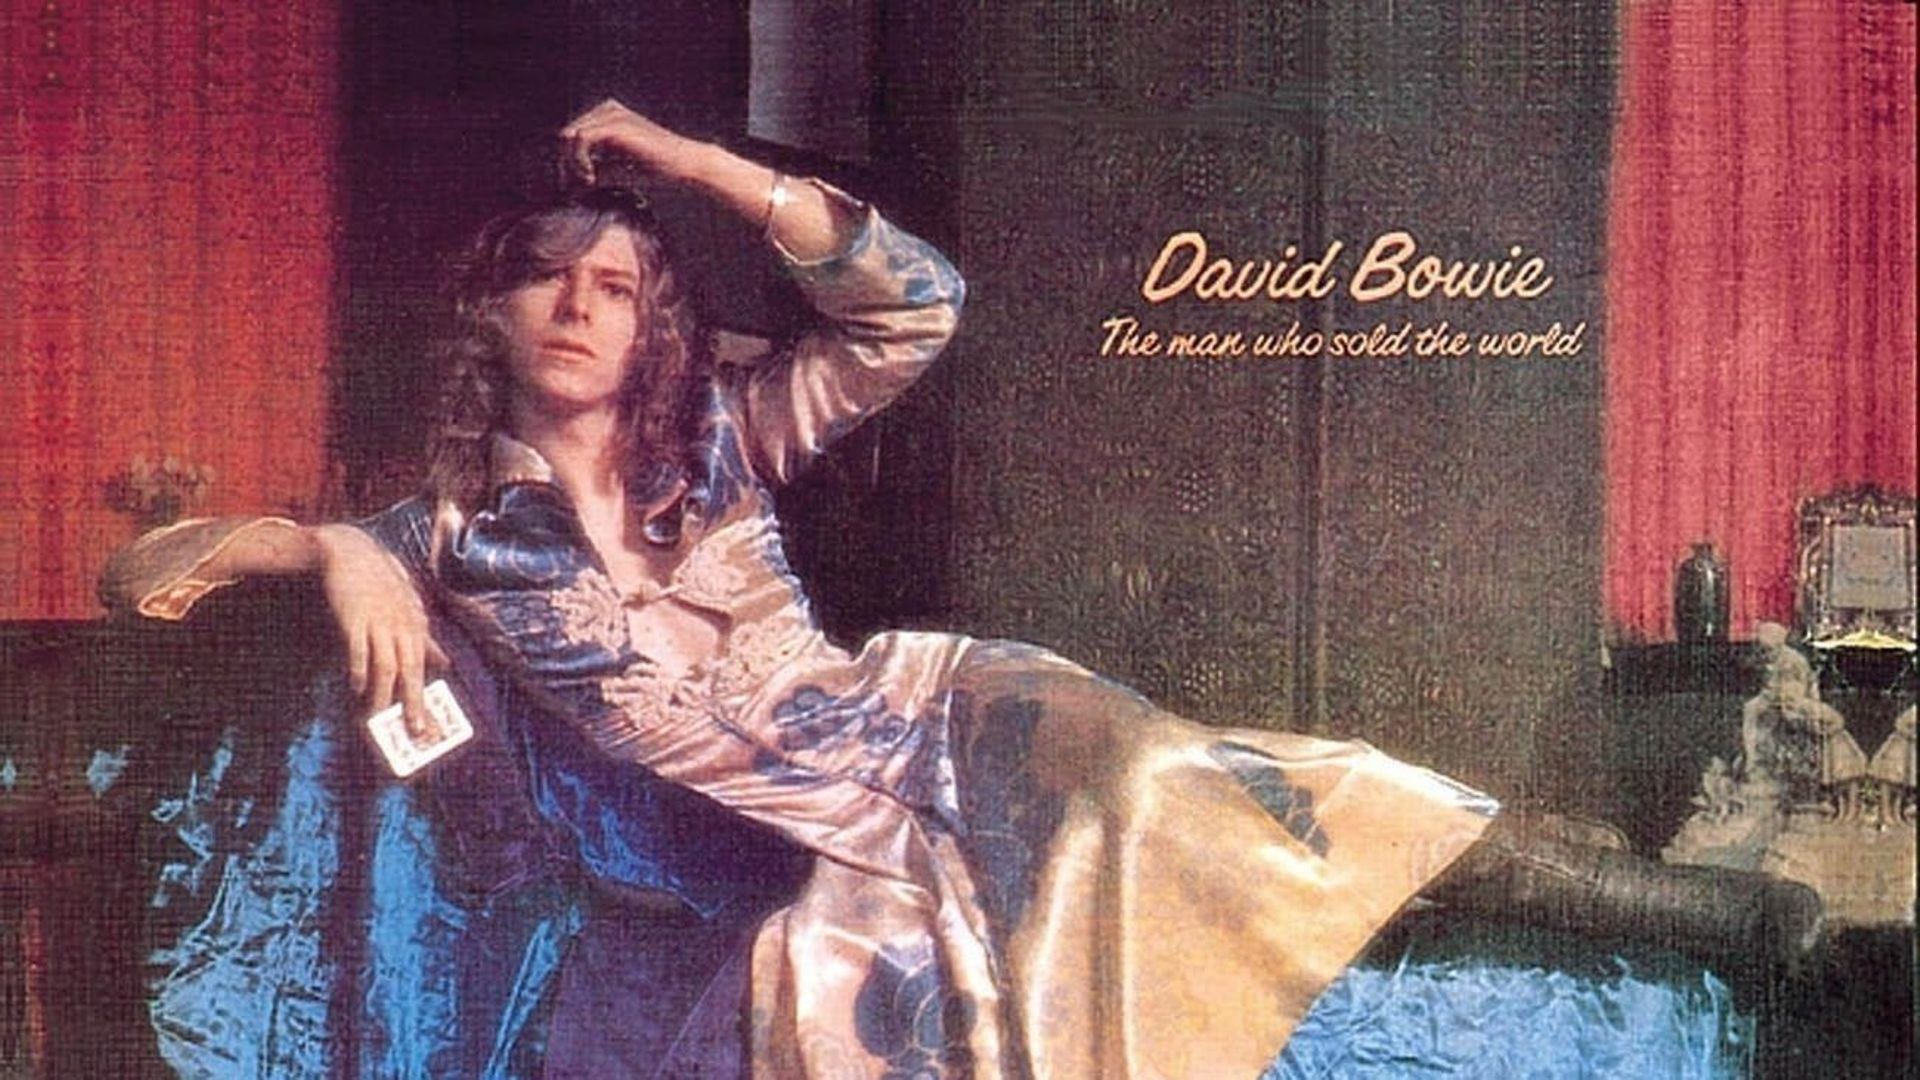 Les 50 ans de "The Man Who Sold The World" de David Bowie 